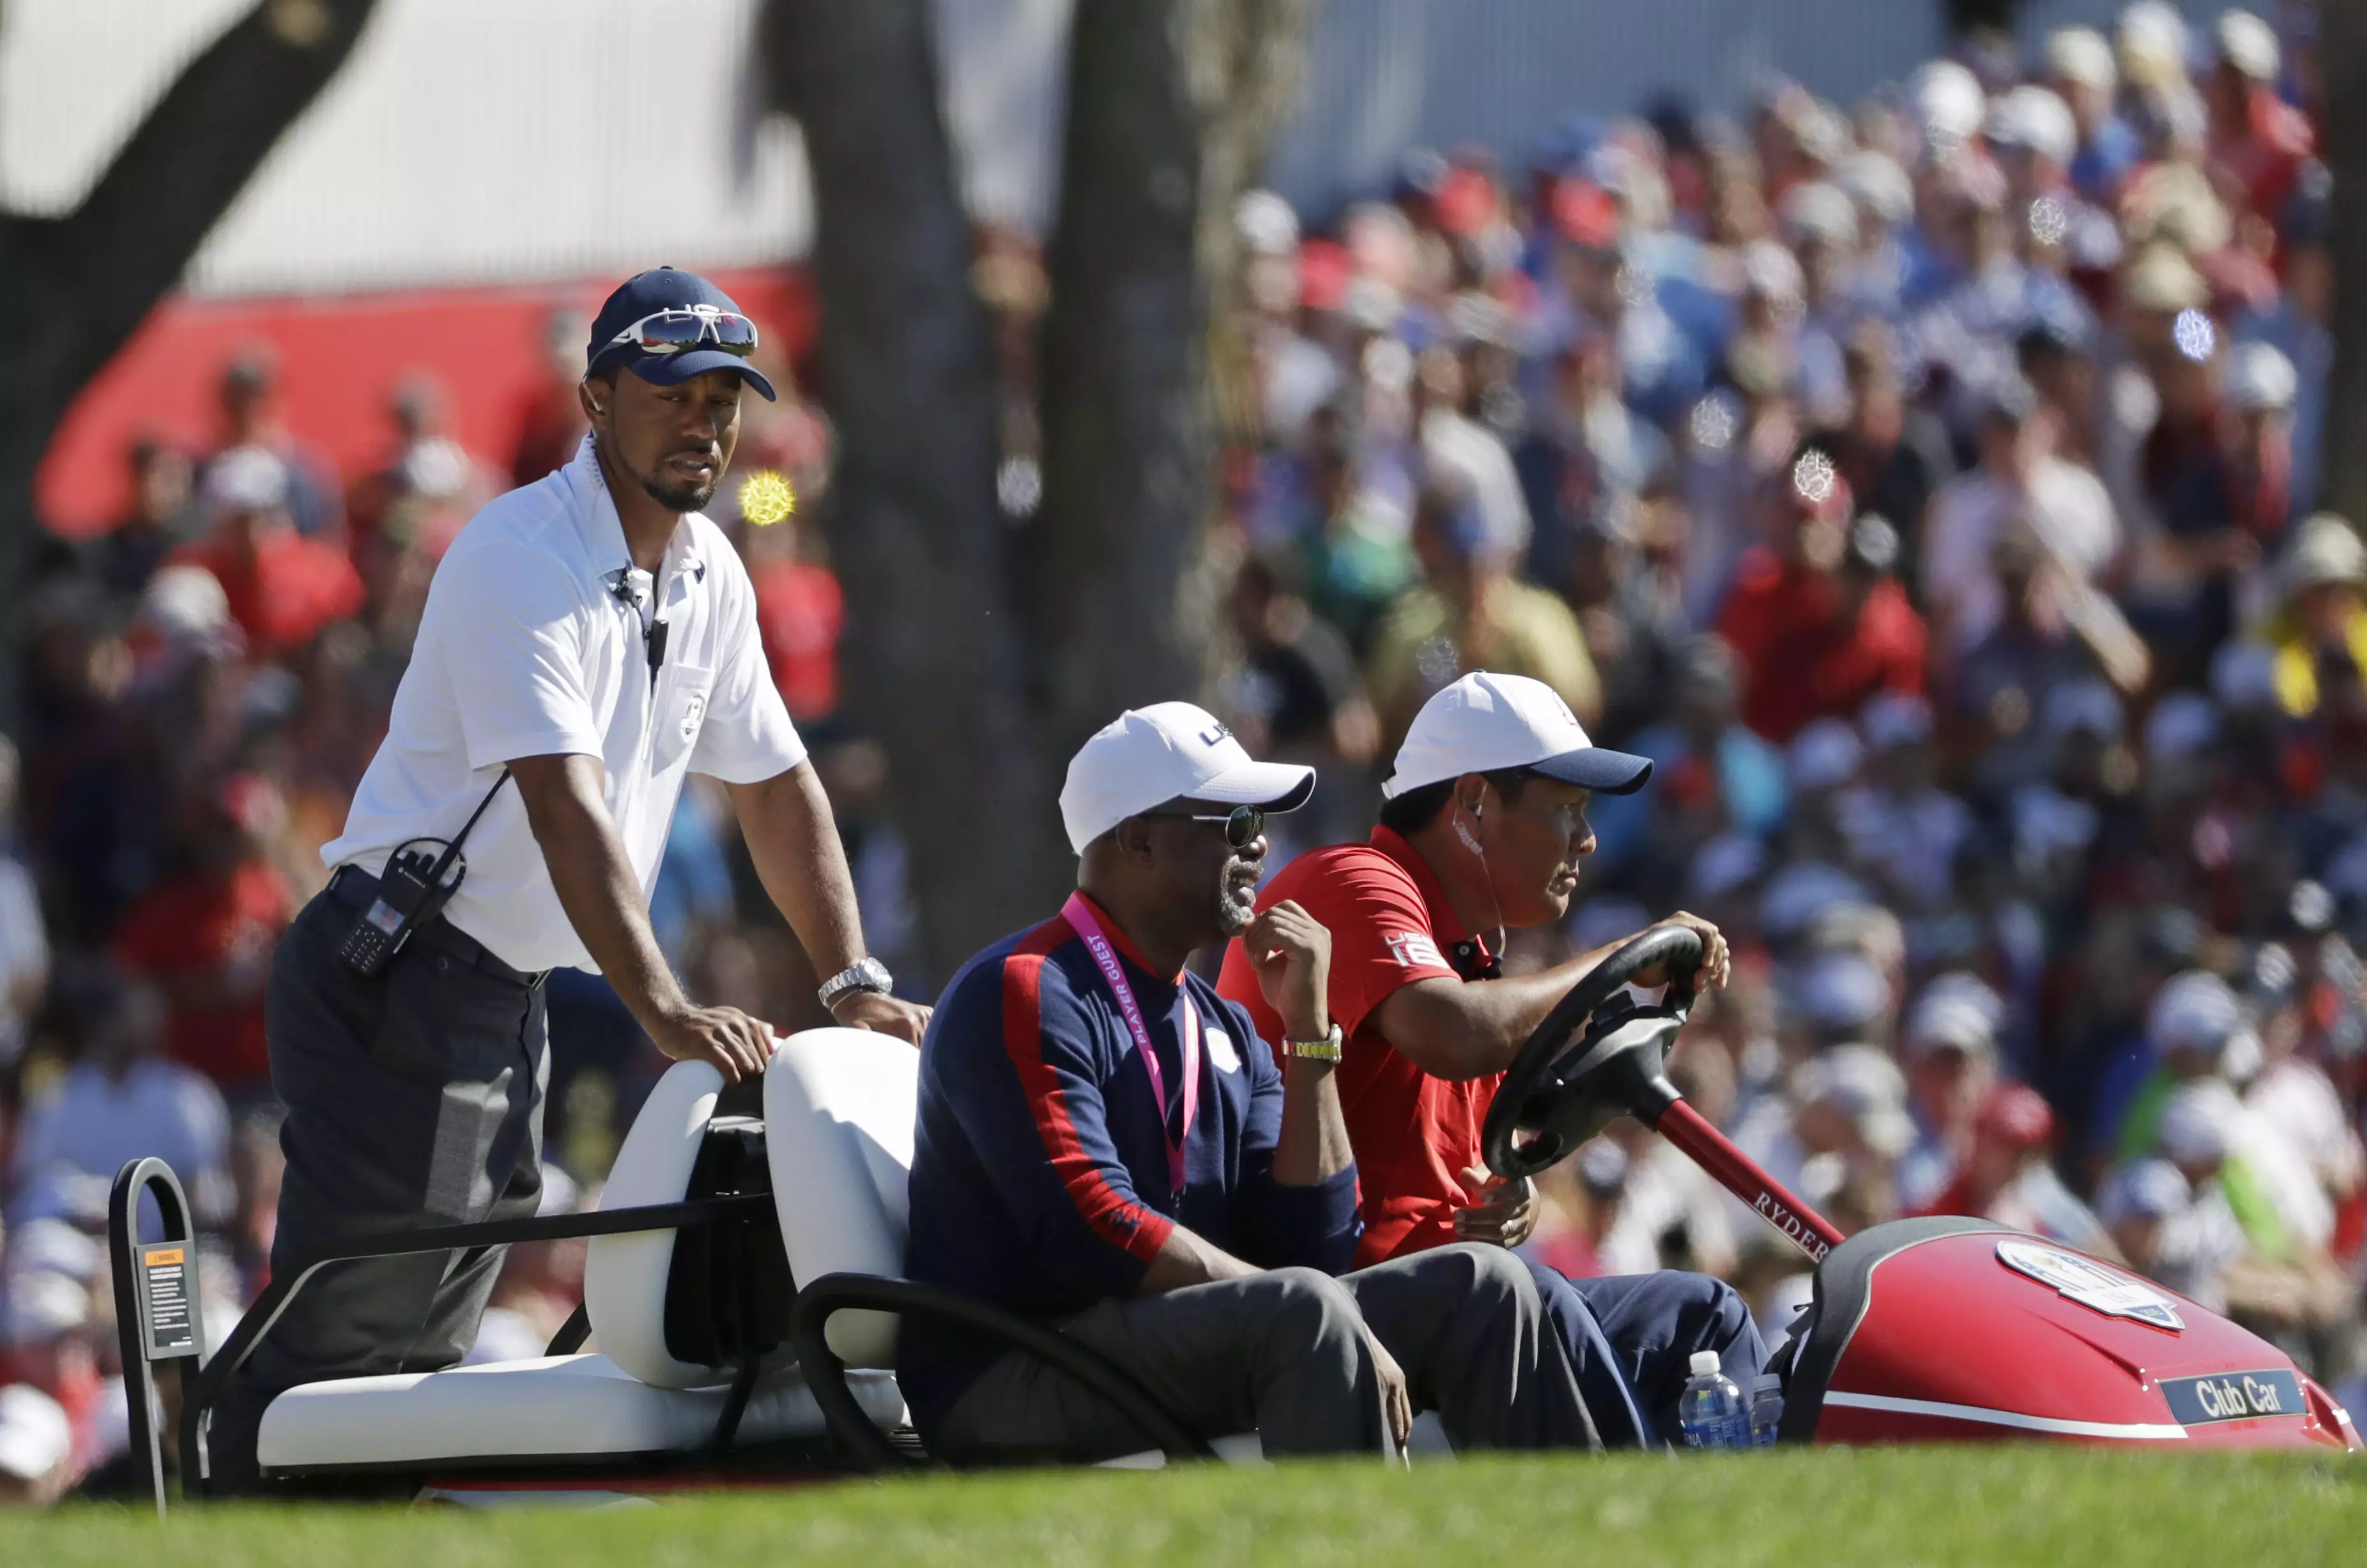 Stint As Vice Captain Convinces Tiger Woods He Wants To Captain U.S